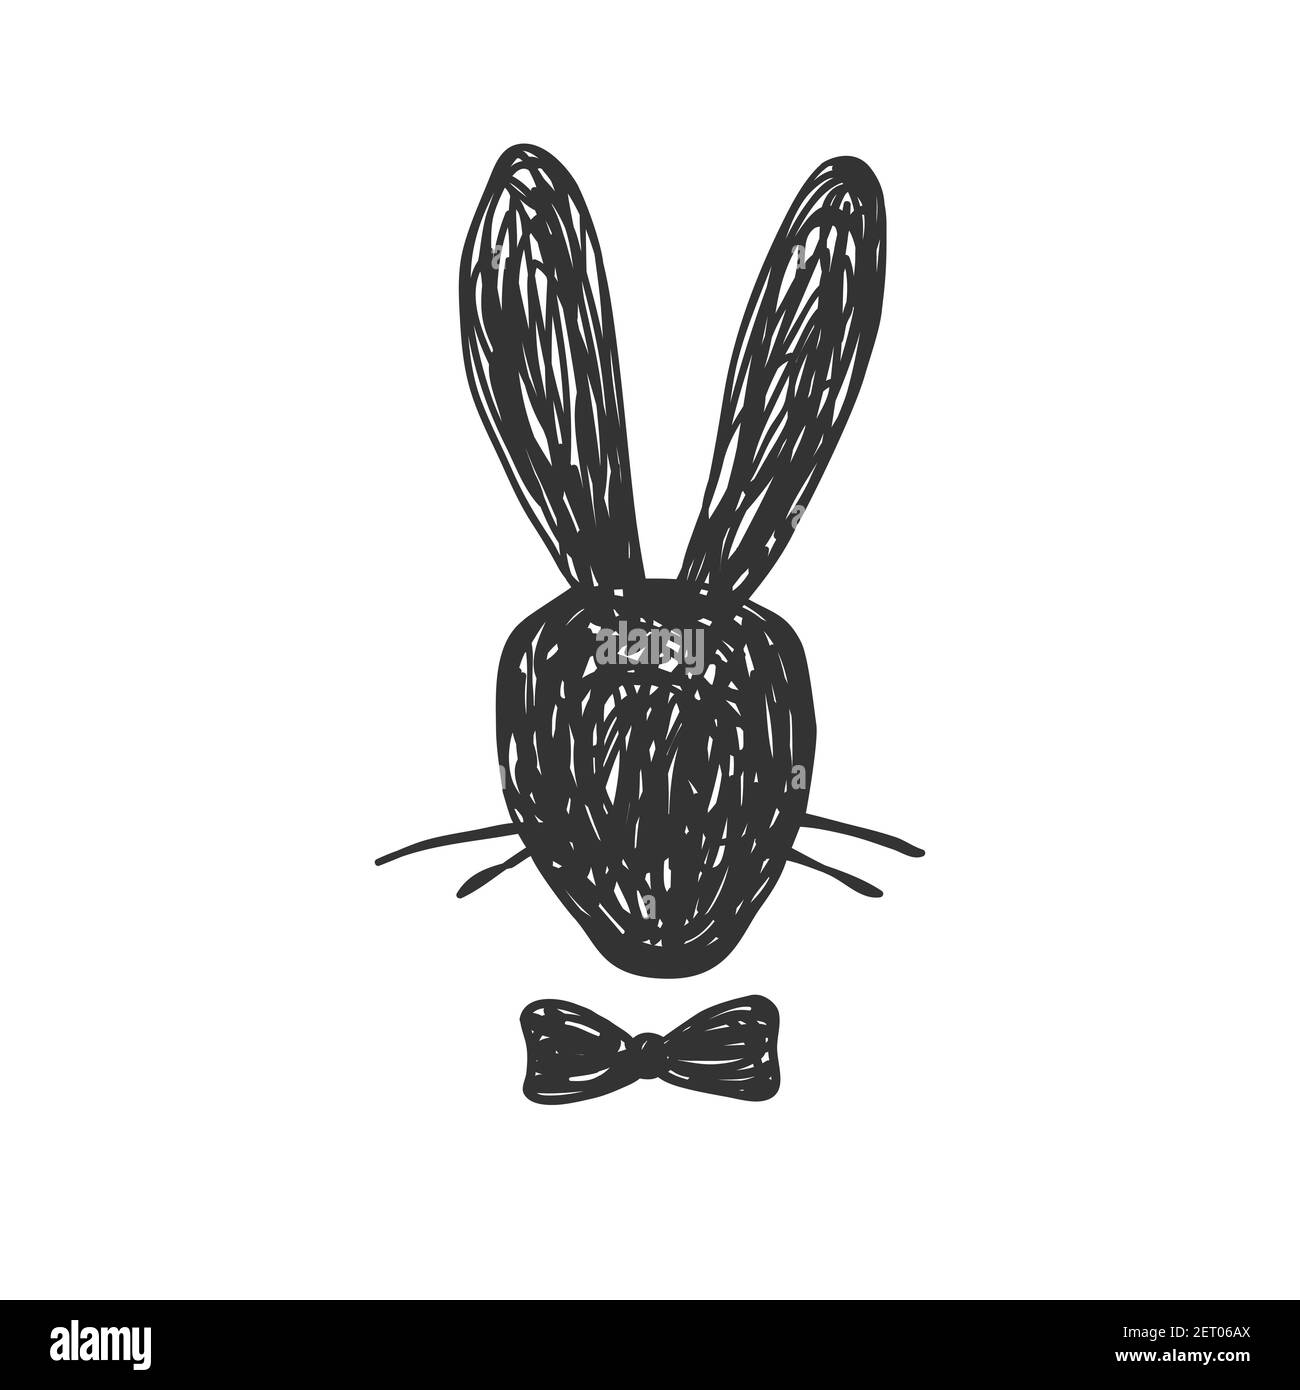 Portrait de silhouette dessiné à la main de monsieur tête de lapin avec  noeud papillon. Easter concept, illustration vectorielle isolée sur blanc  Image Vectorielle Stock - Alamy